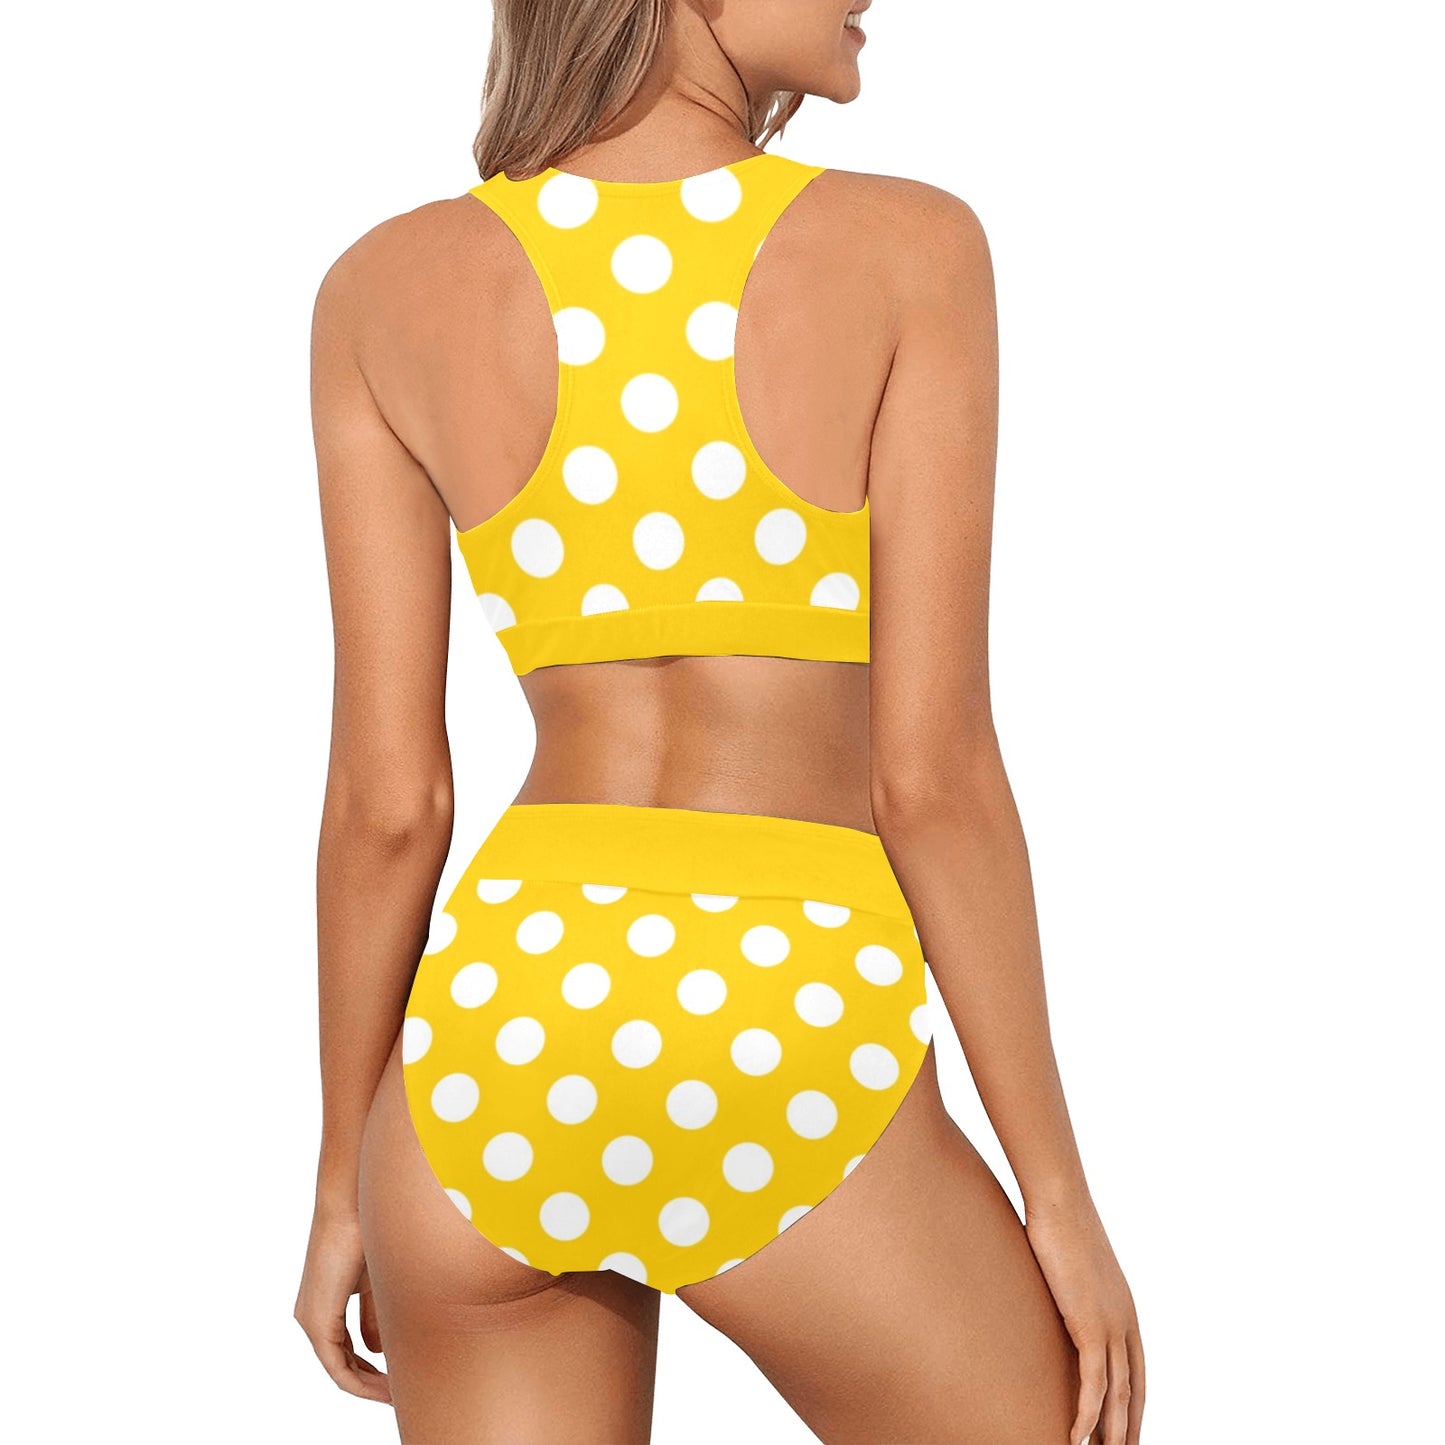 Yellow Polka Dot Bikini Sports Bikini Set, High Waisted Cheeky Bottom Halter Top Sexy Swimsuits Women Padded Swimwear Starcove Fashion